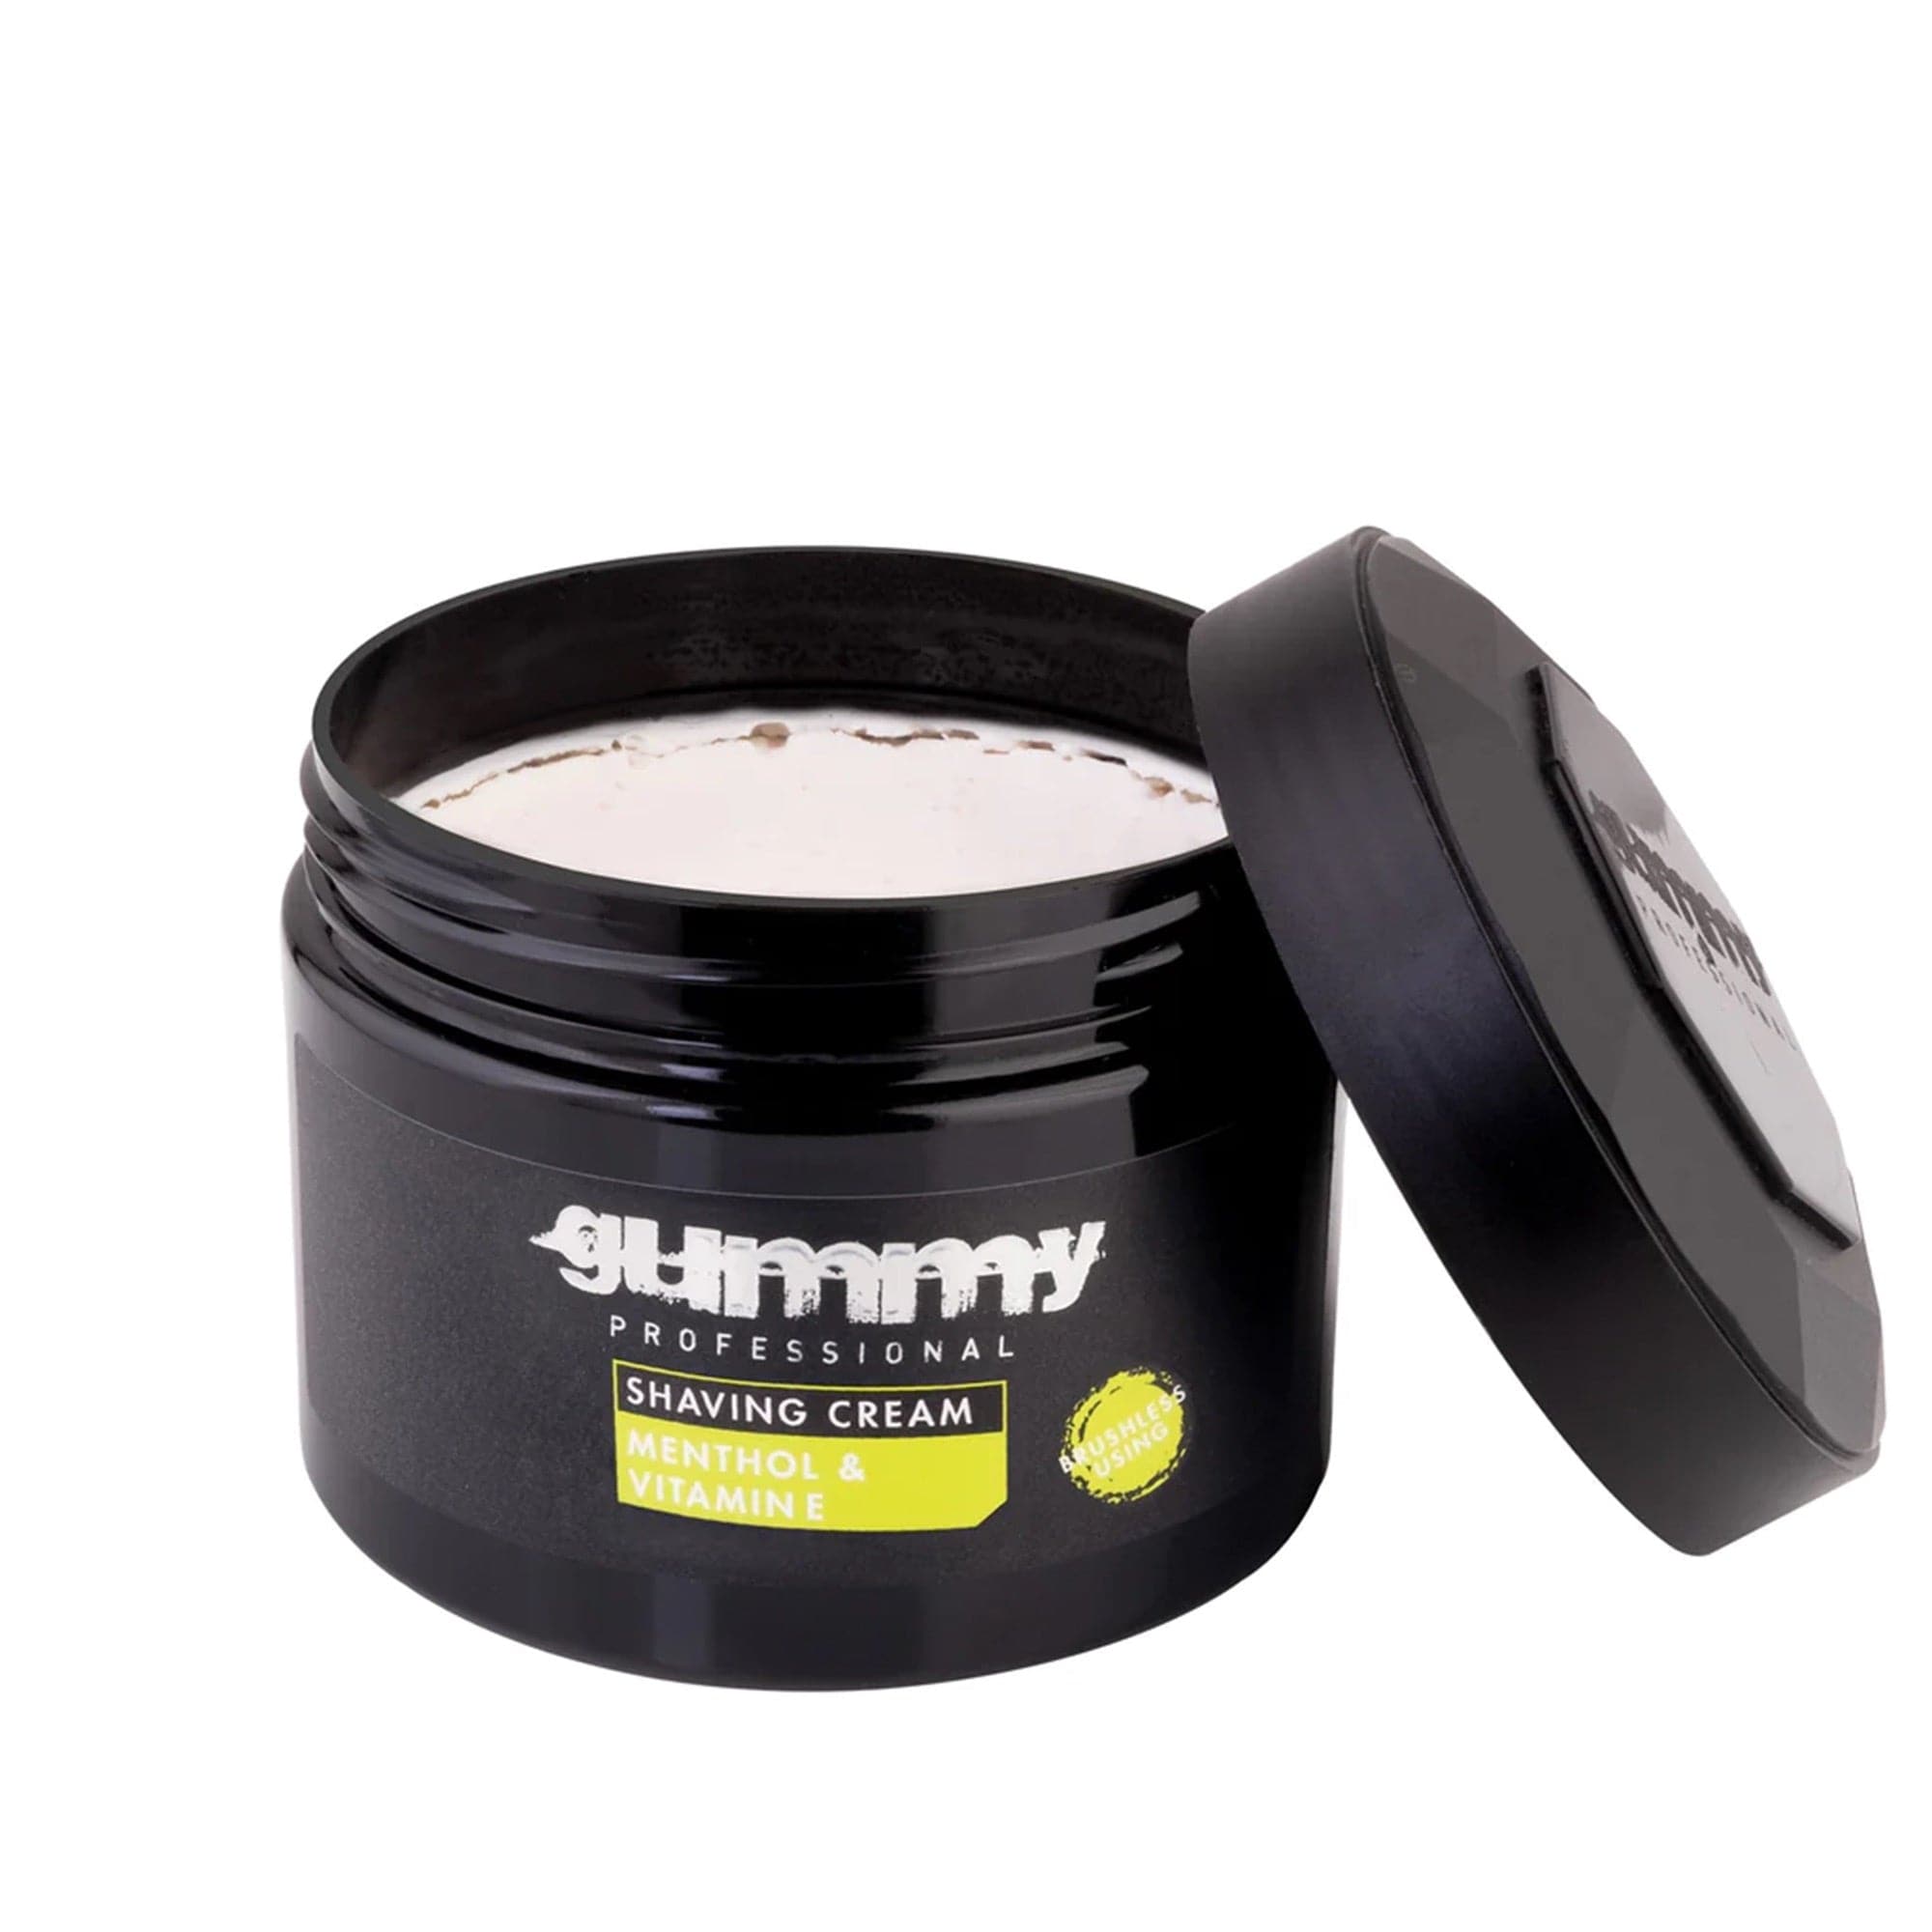 Gummy - Shaving Cream Menthol & Vitamin E 300ml